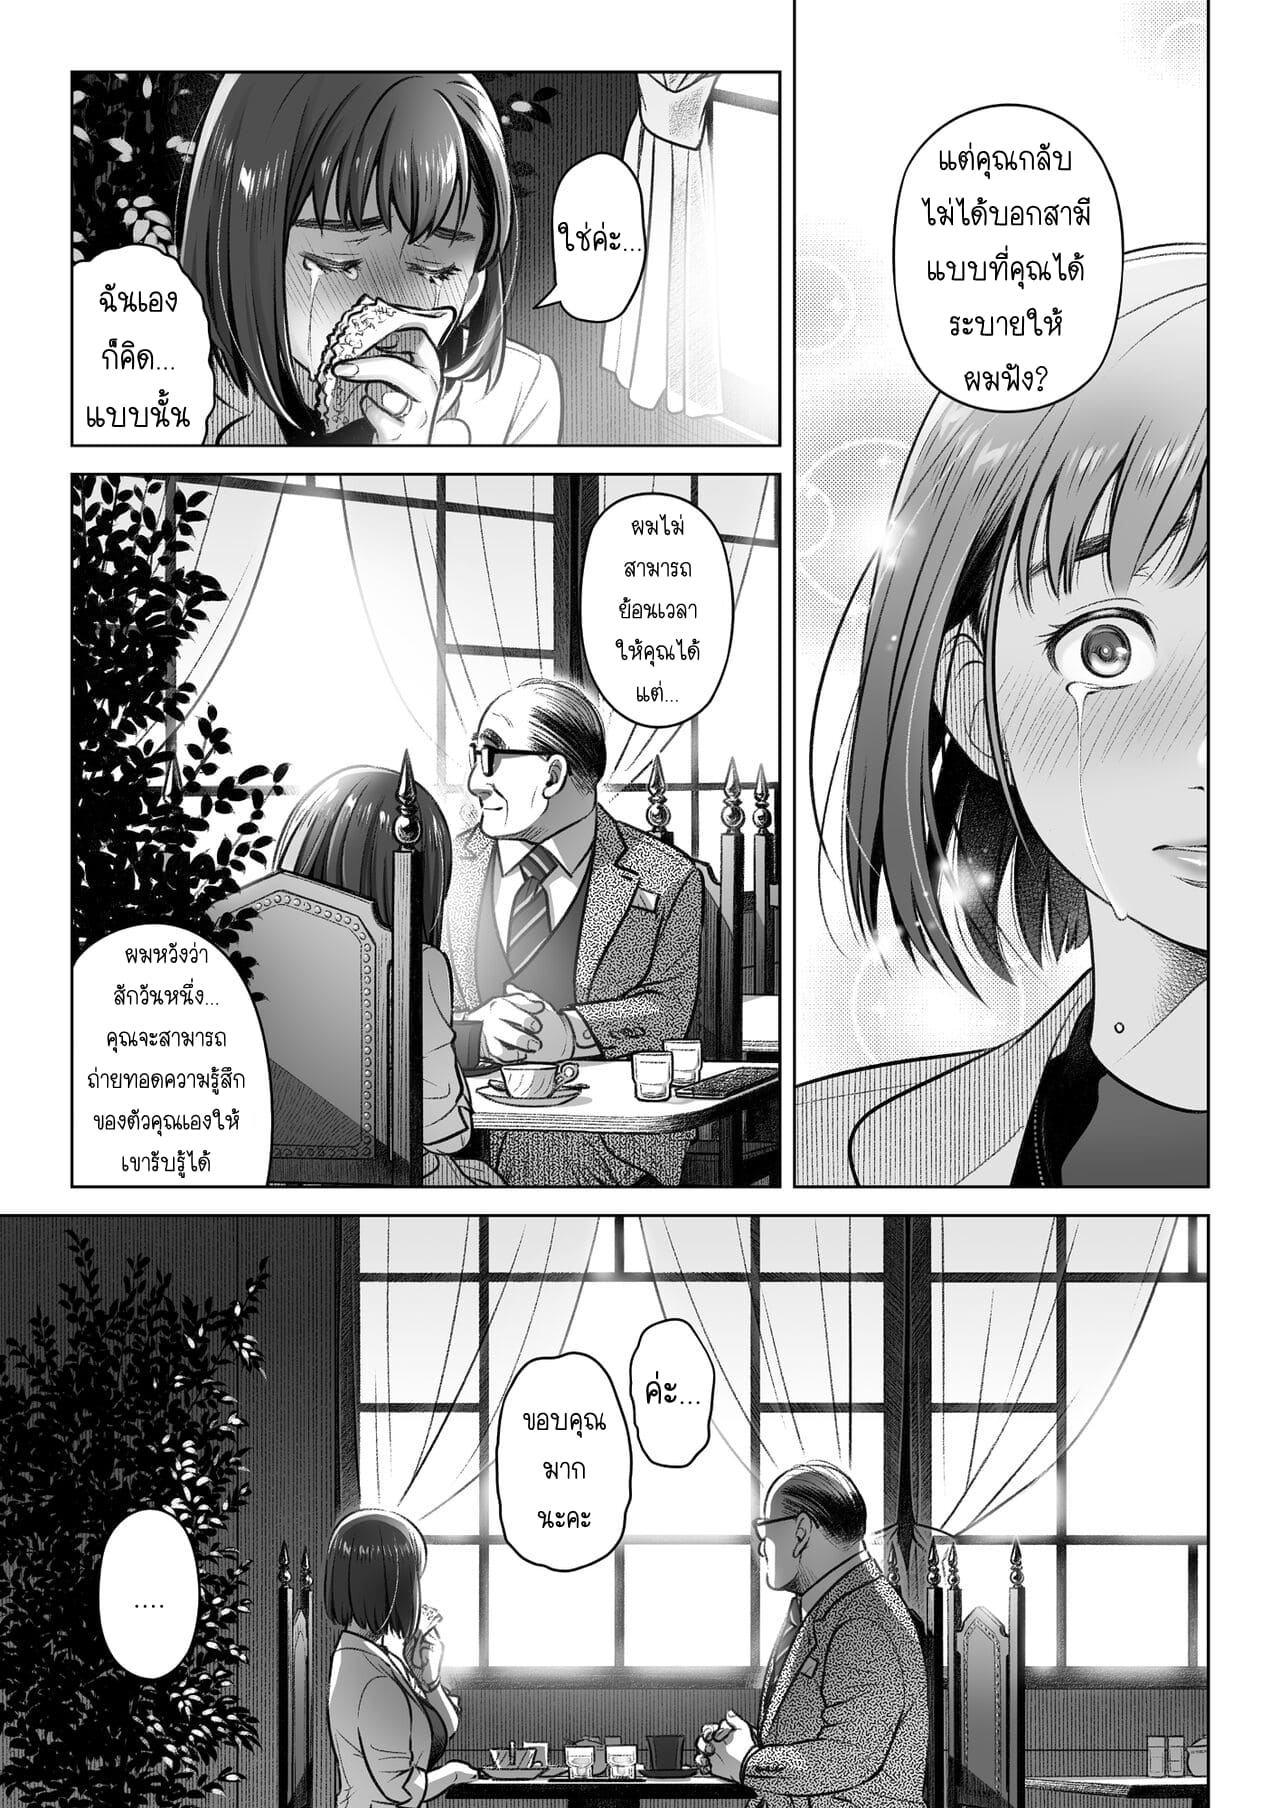 คำสารภาพของอากิโกะ คุราตะ 3 จบ ภาพ 13